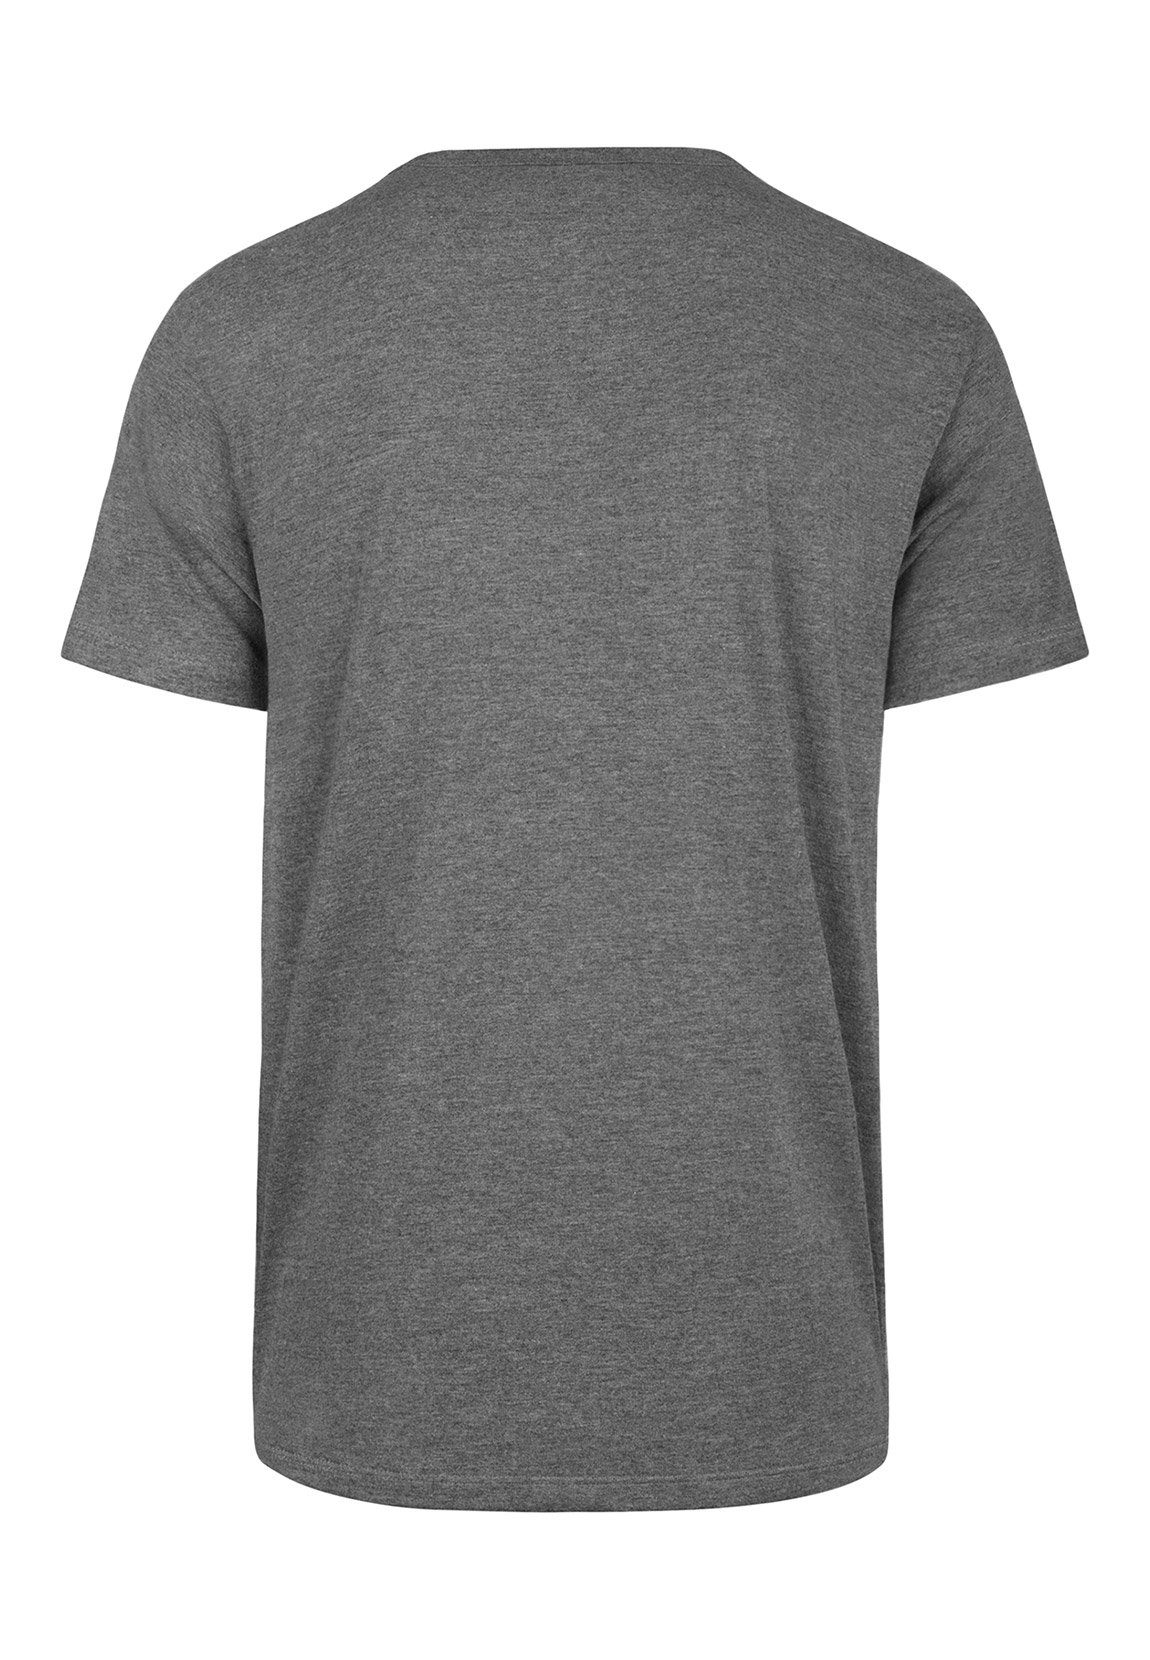 Brand Tee KINGS Slate ANGELES LOS Herren Vintage '47 T-Shirt 546632 Flocked T-Shirt 47 Grau Brand Grey Echo 47